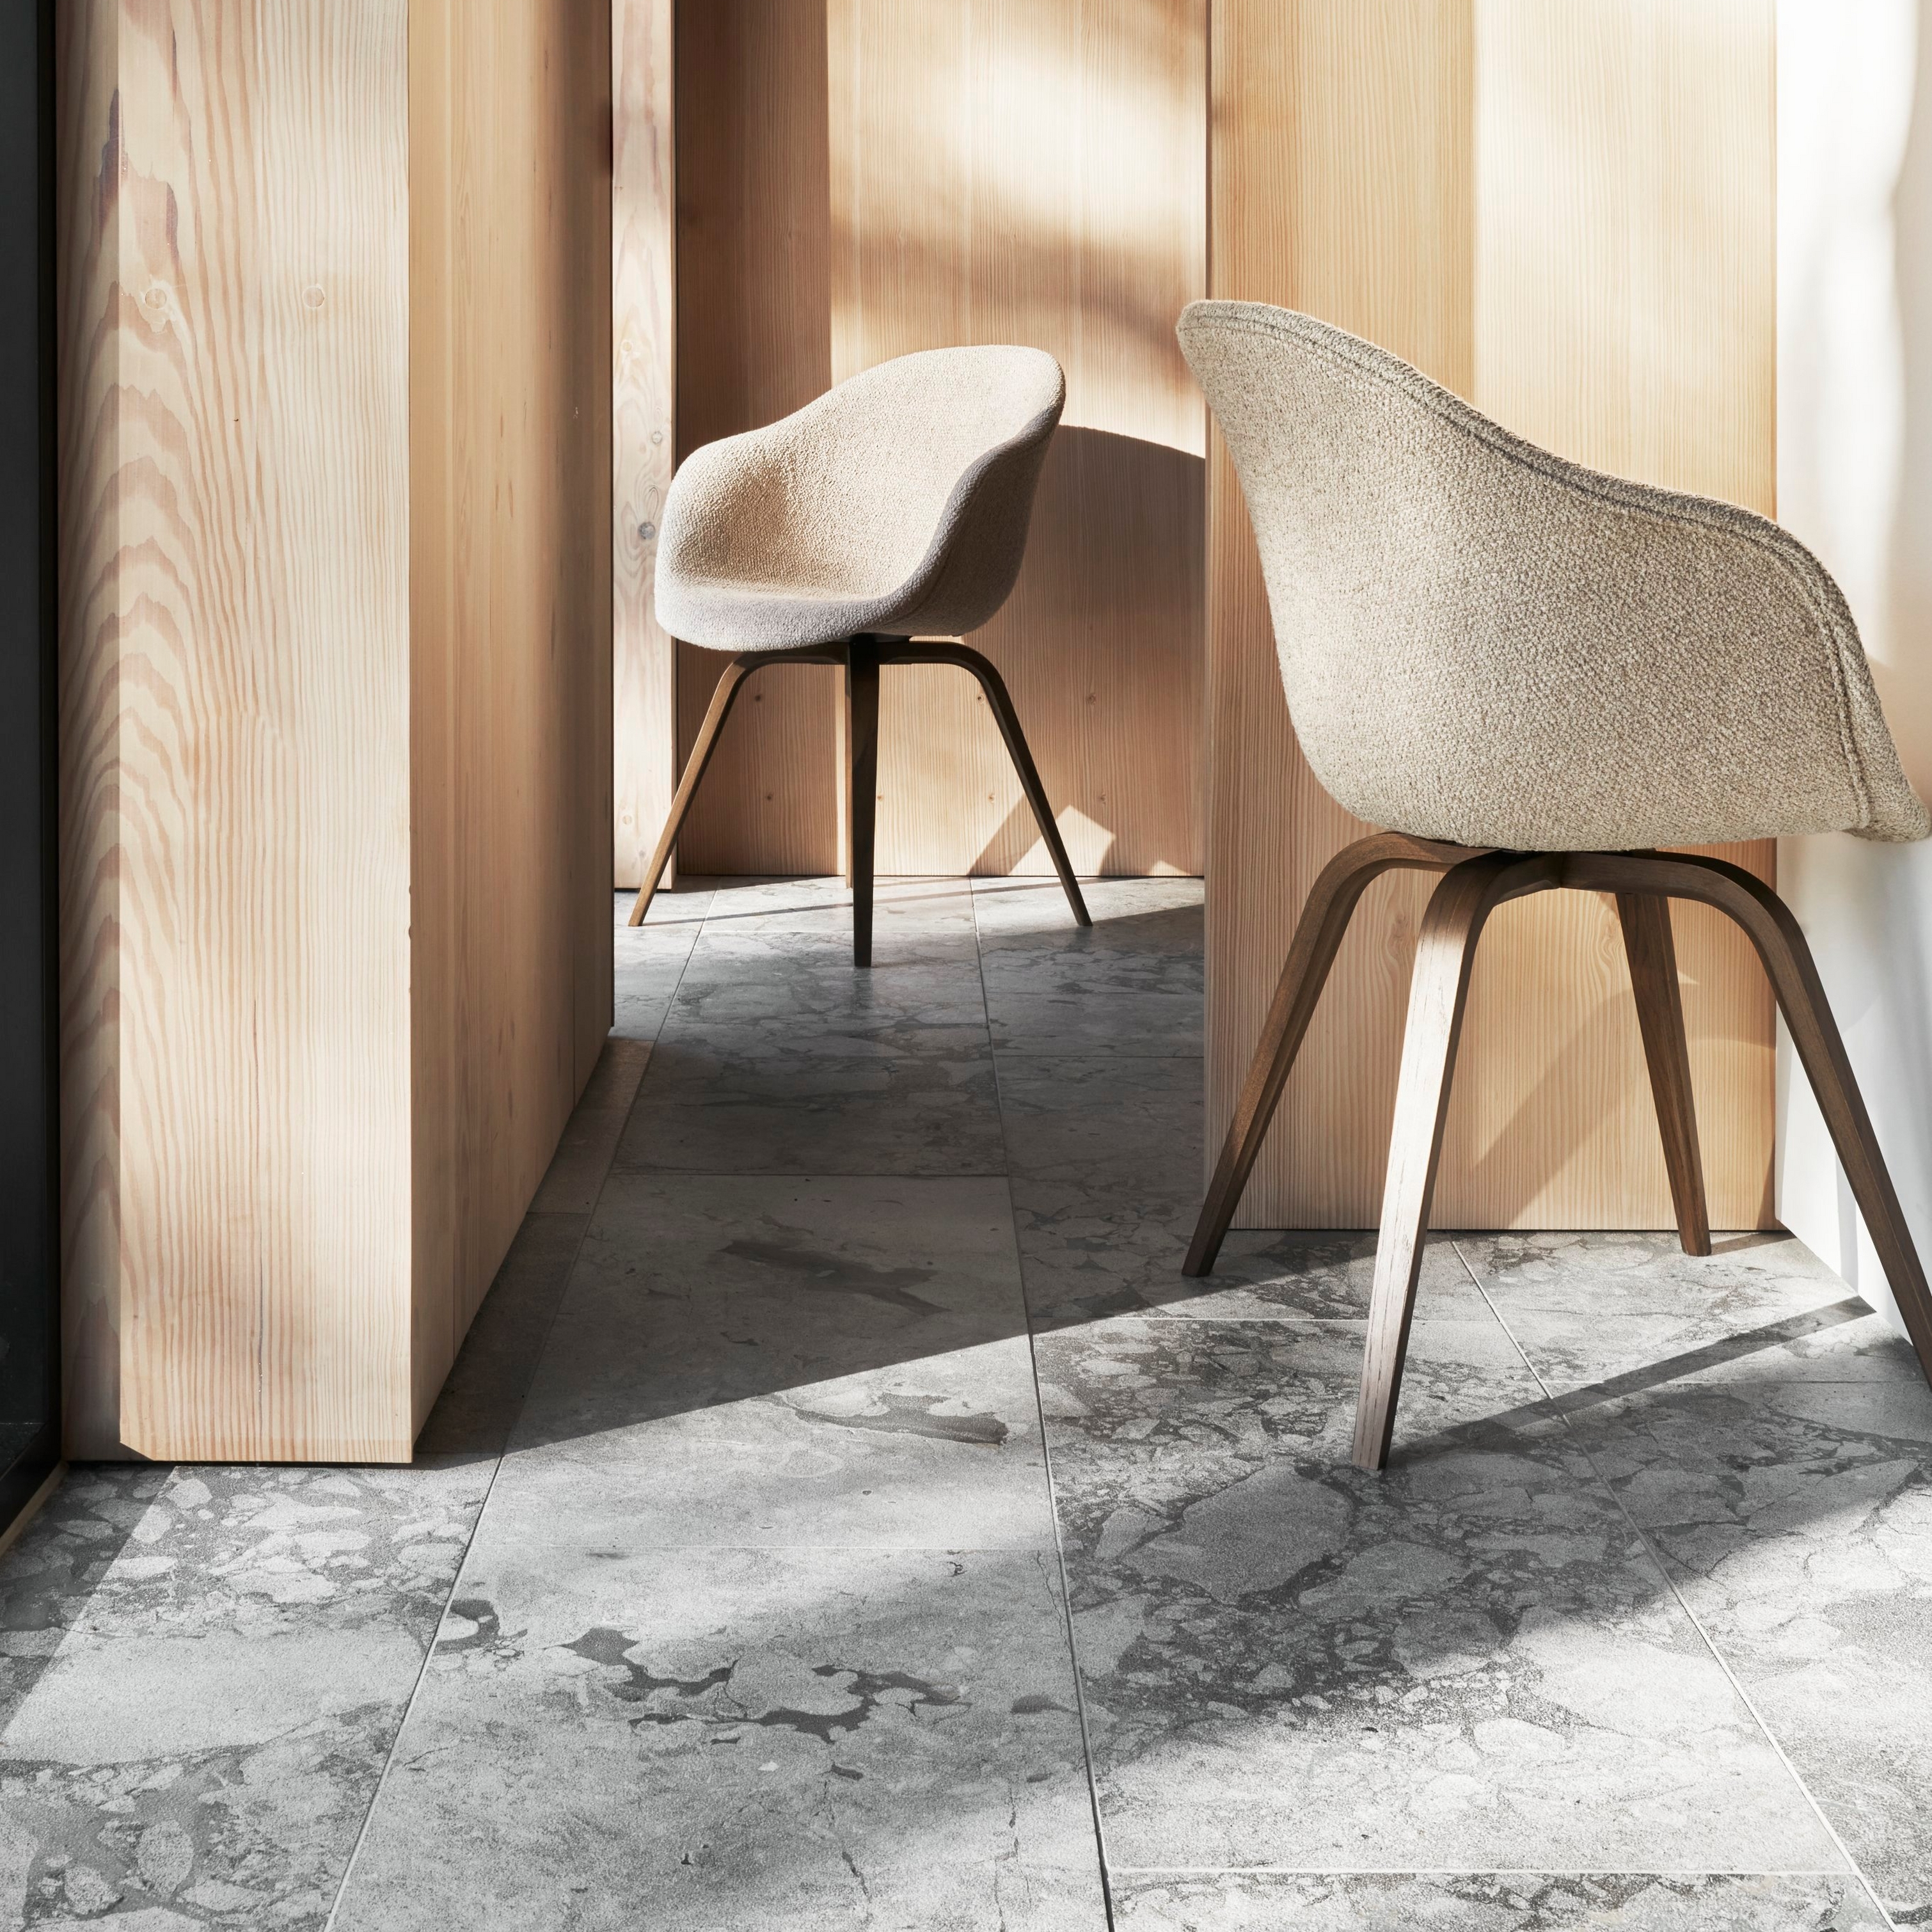 Intérieur ensoleillé avec deux chaises Hauge, des murs en bois et un sol en marbre.